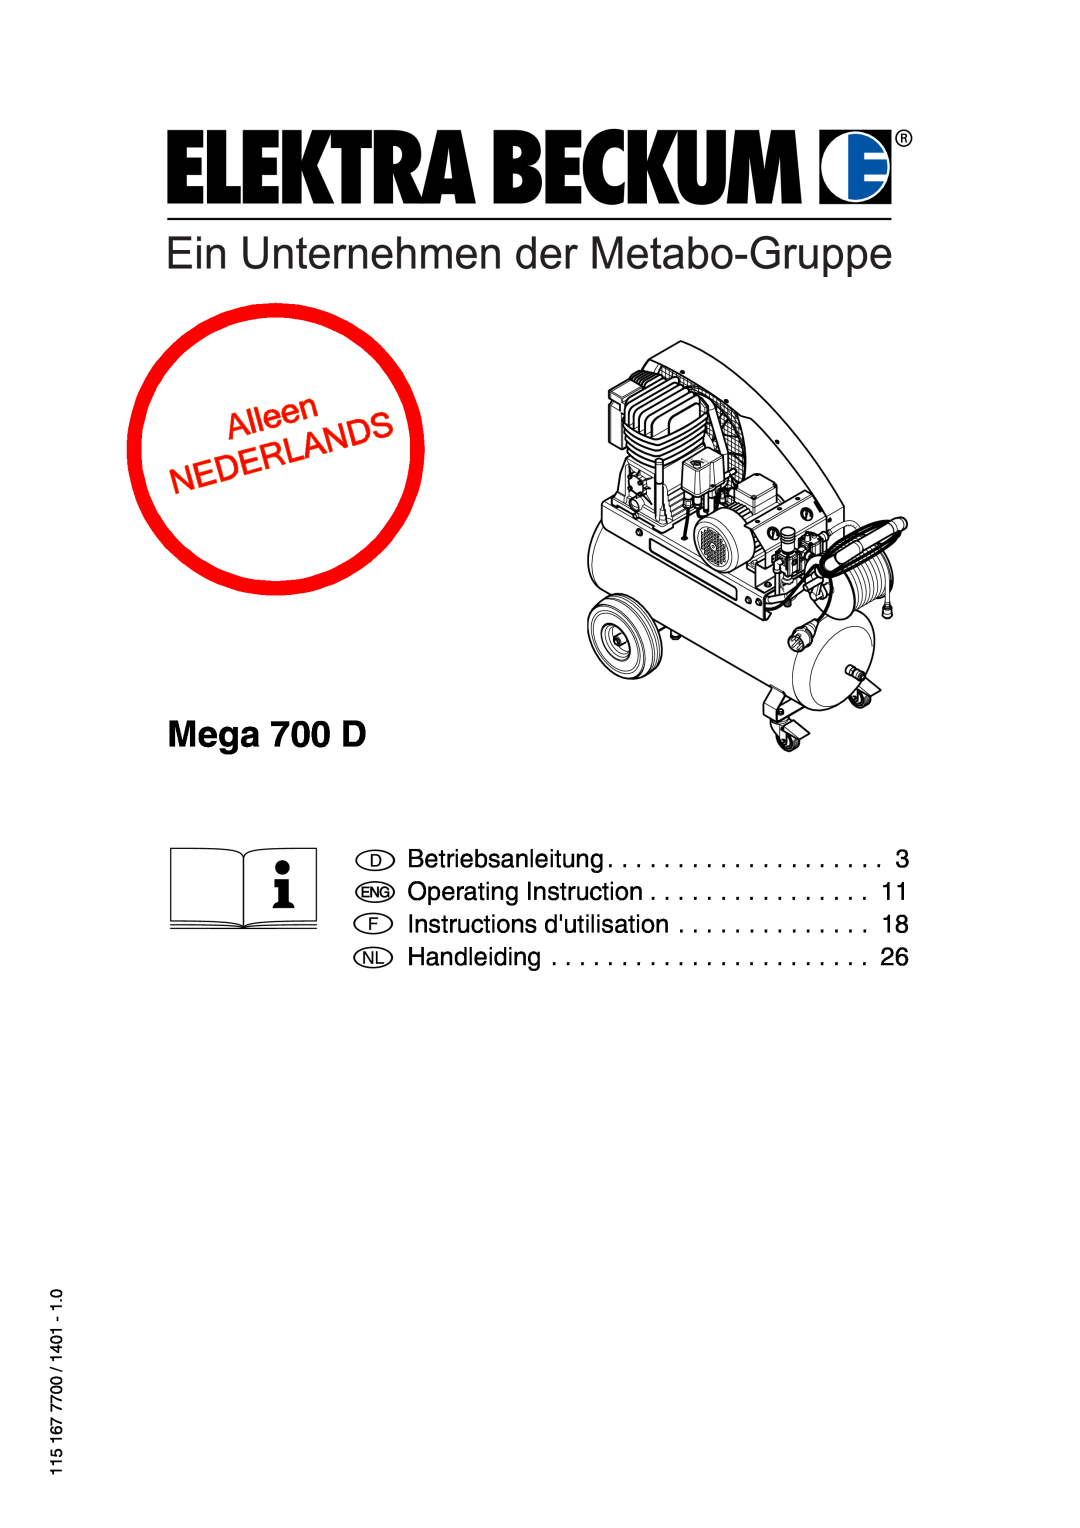 Elektra Beckum Mega 700 D manual Betriebsanleitung Operating Instruction Instructions dutilisation, Handleiding, Auto 